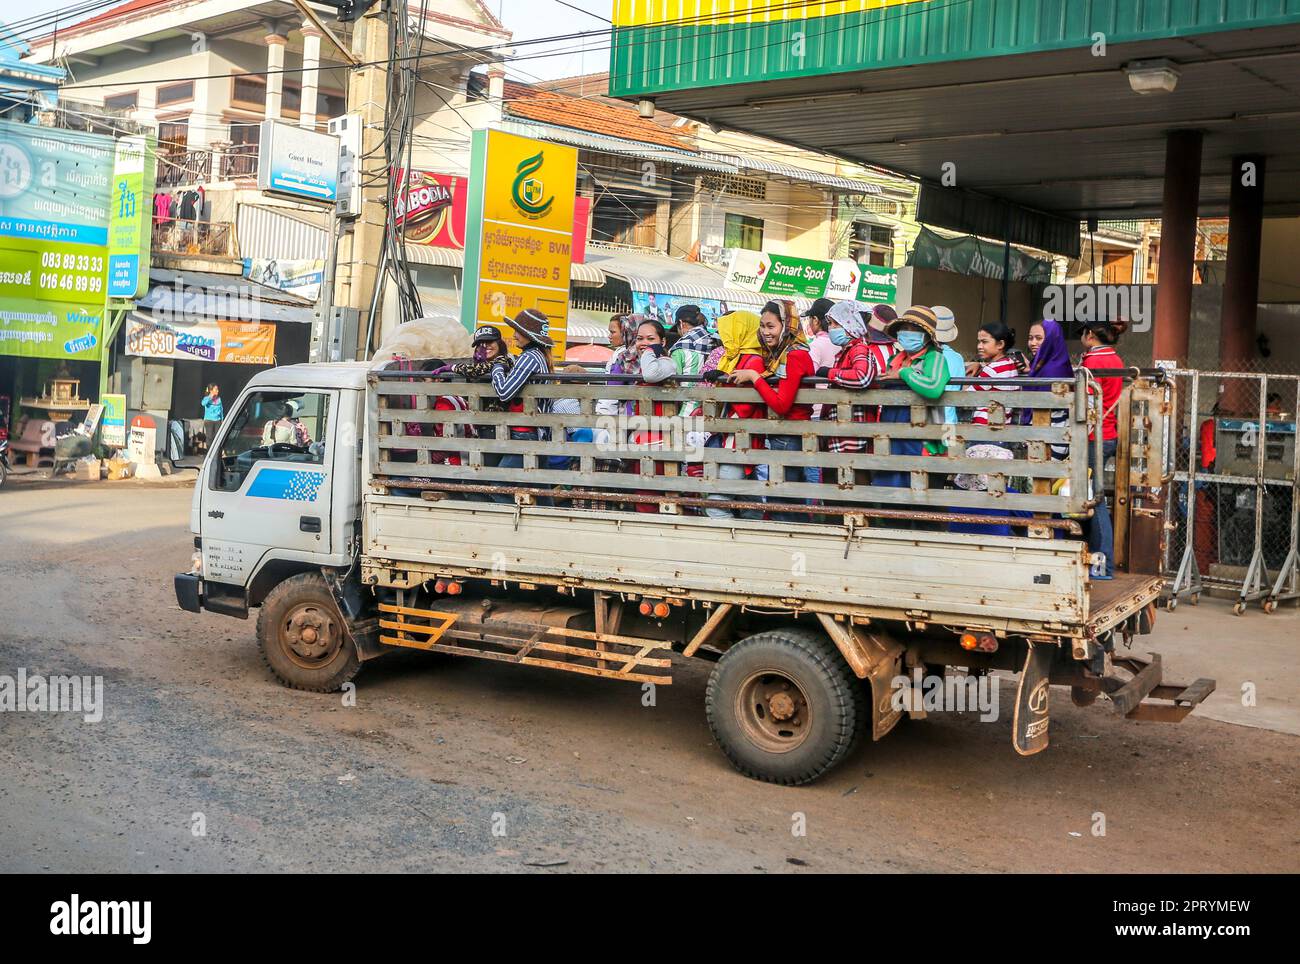 Camion transportant les travailleurs textiles Khmers entre leurs villages et usines de vêtements, banlieue de Phnom Penh, Cambodge transport des fabricants de vêtements Banque D'Images